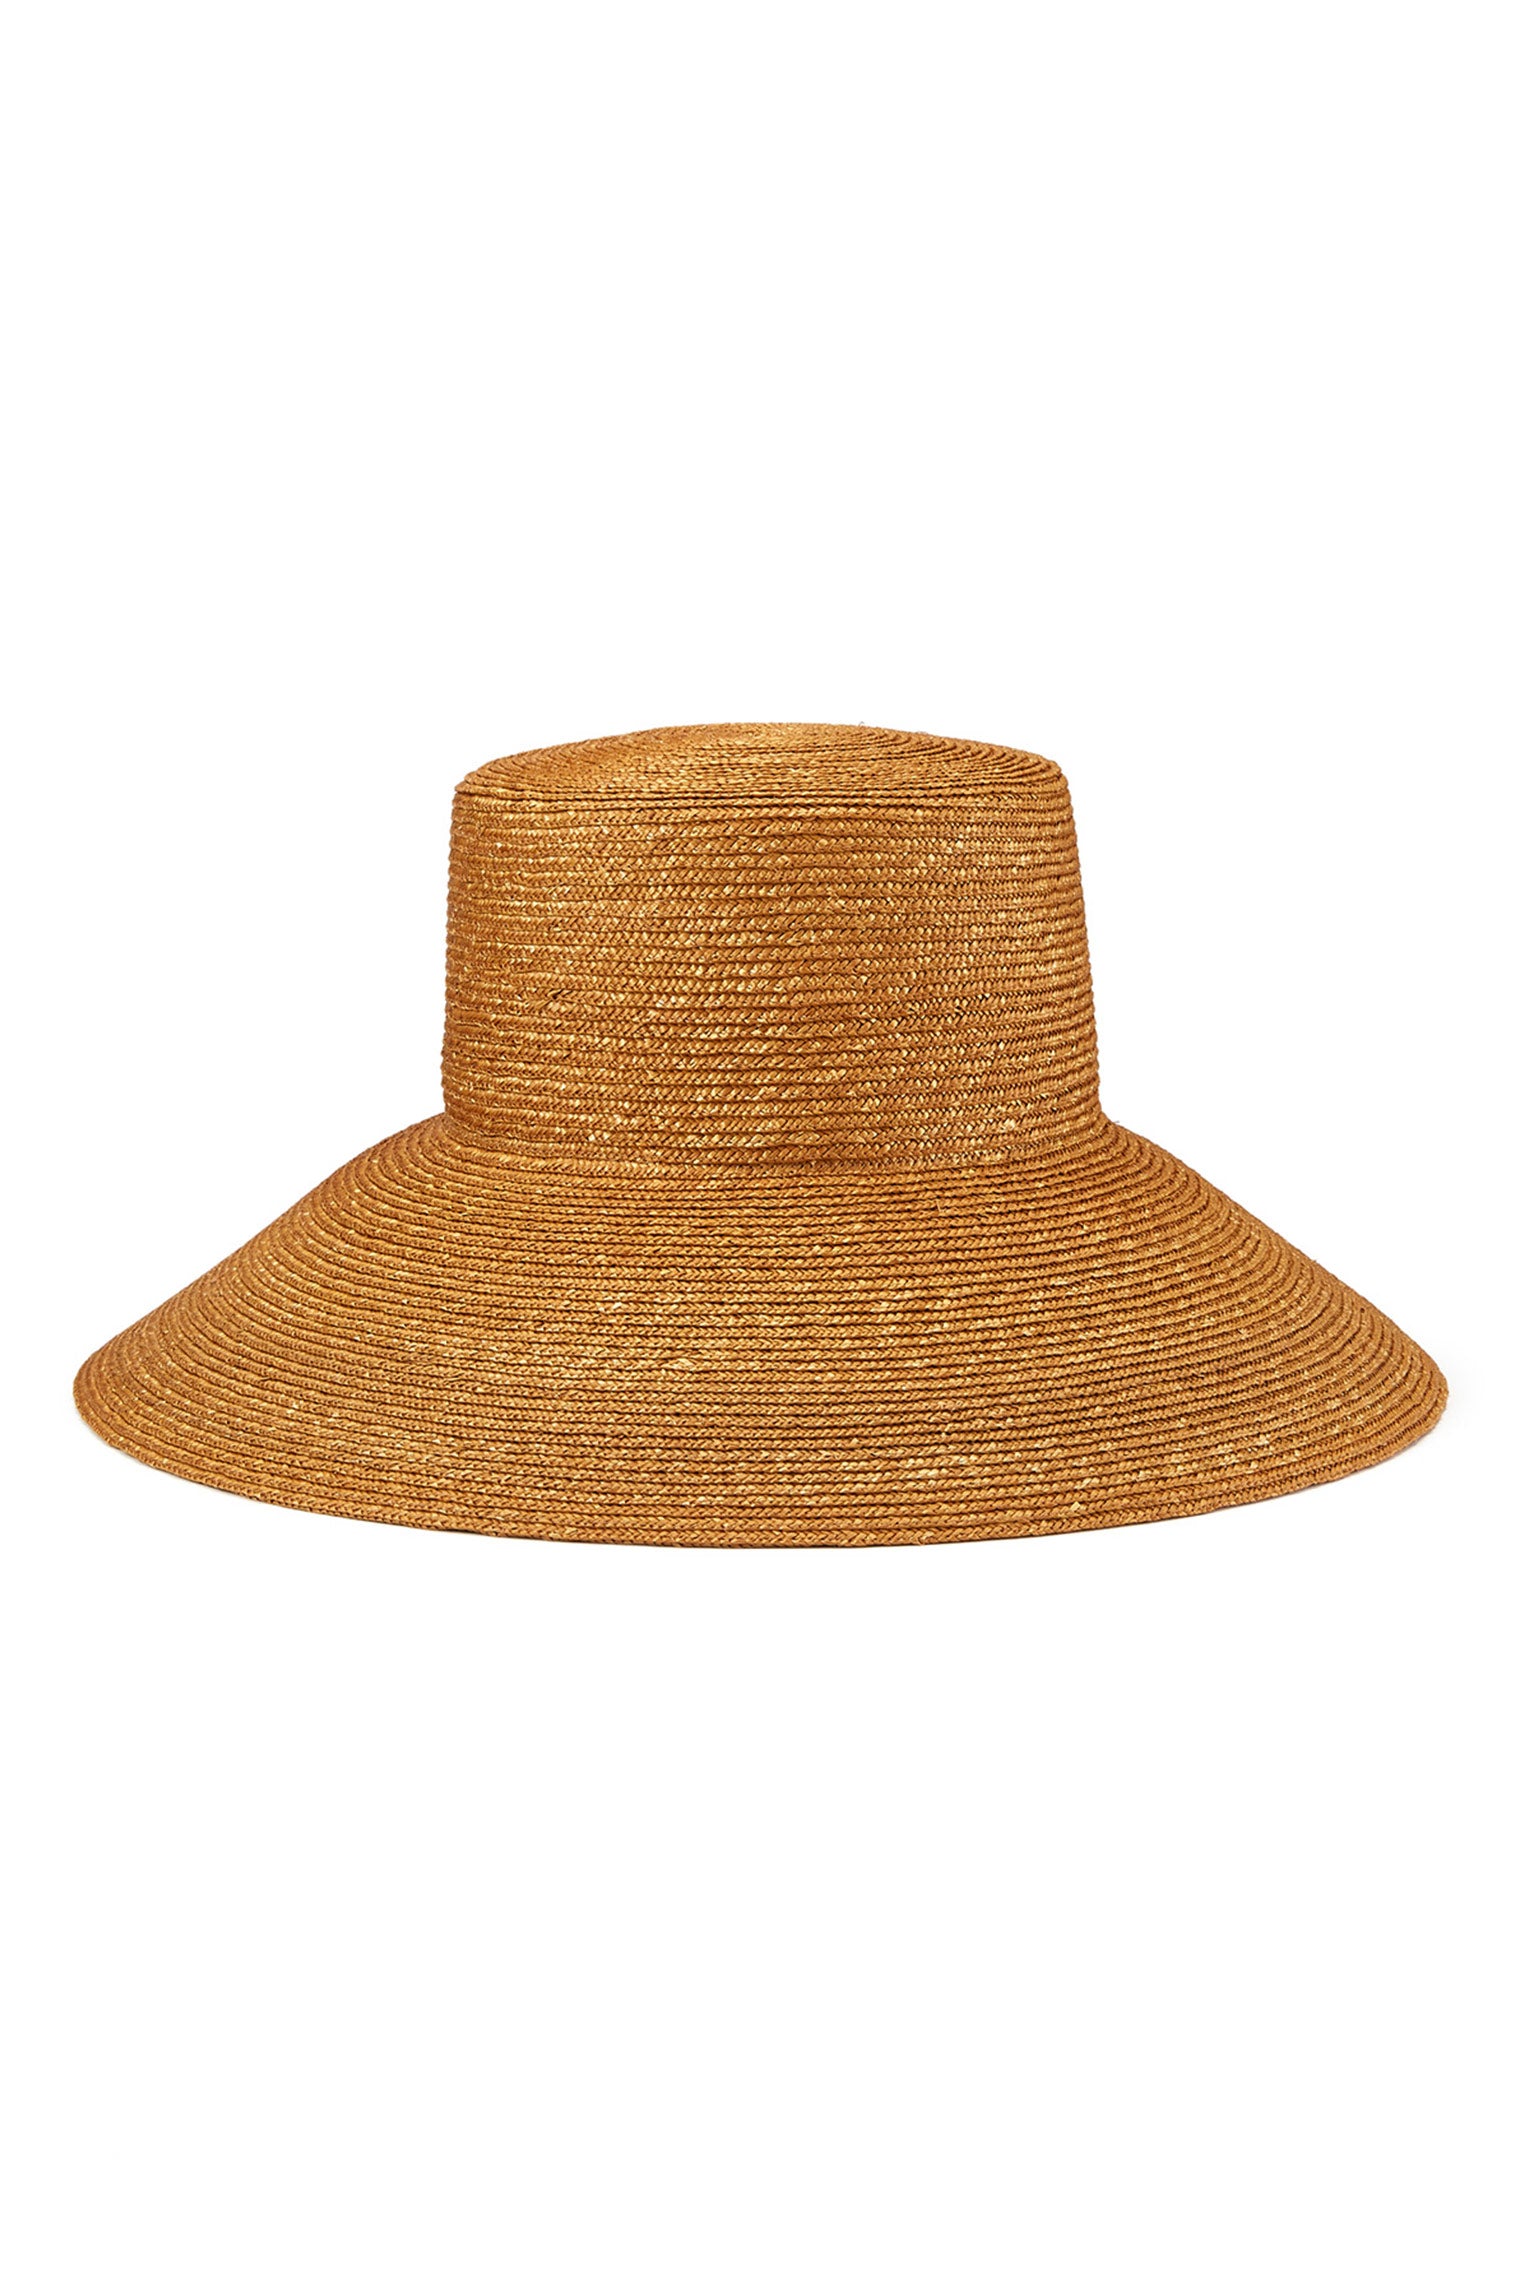 Sadie Straw Braid Fedora - Best Selling Hats - Lock & Co. Hatters London UK